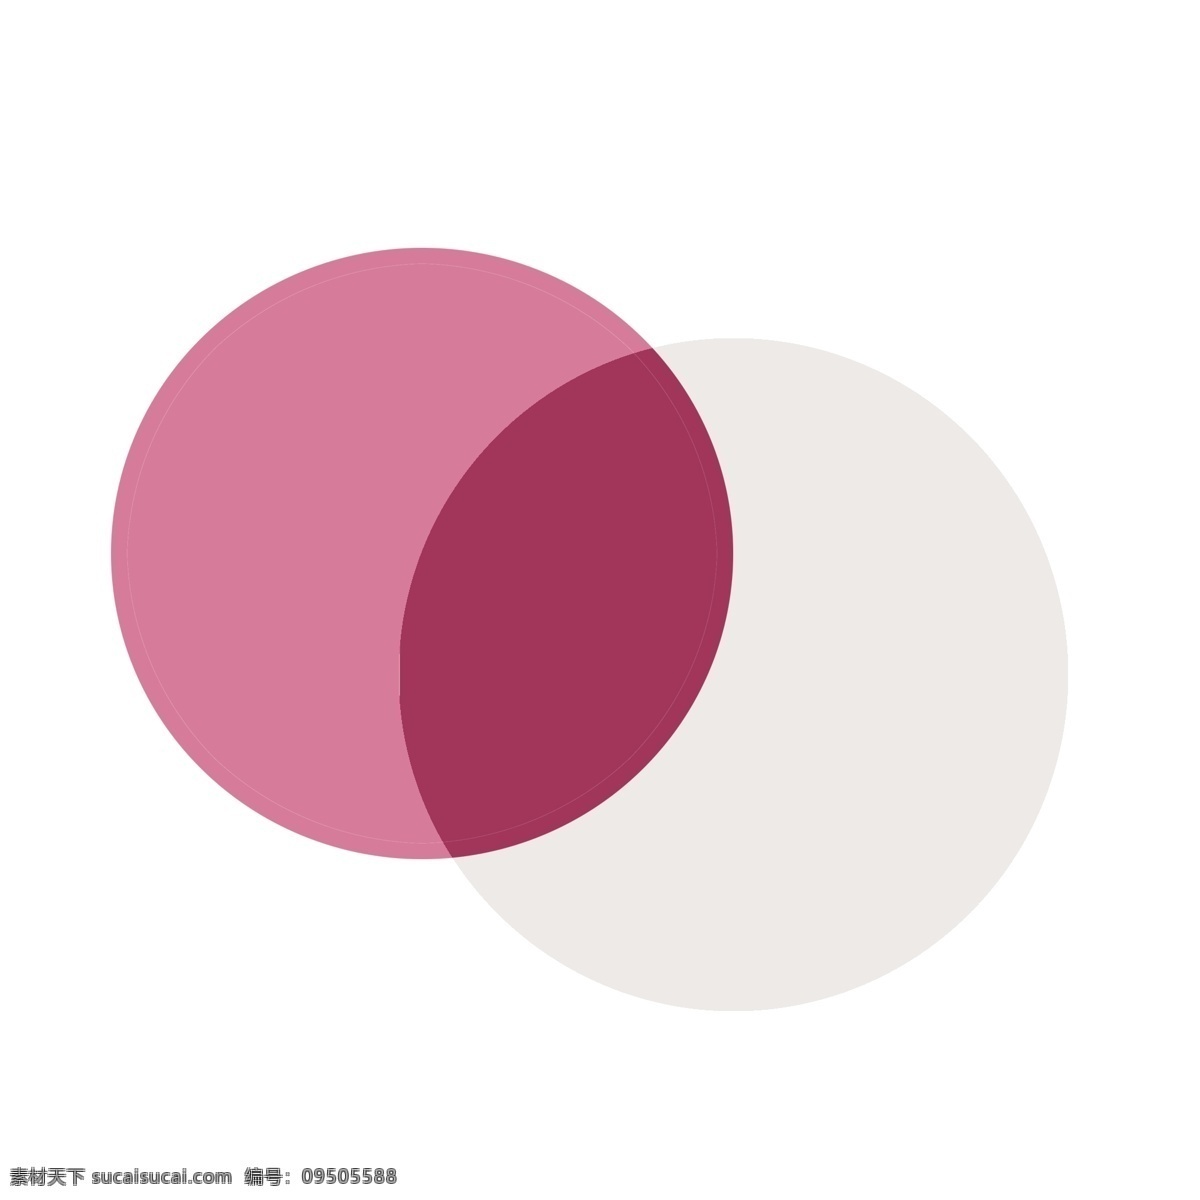 饼 状 图形 装饰 粉色 圆 圆形 椭圆 椭圆形 白色 交集 几何图形 几何装饰 图形装饰